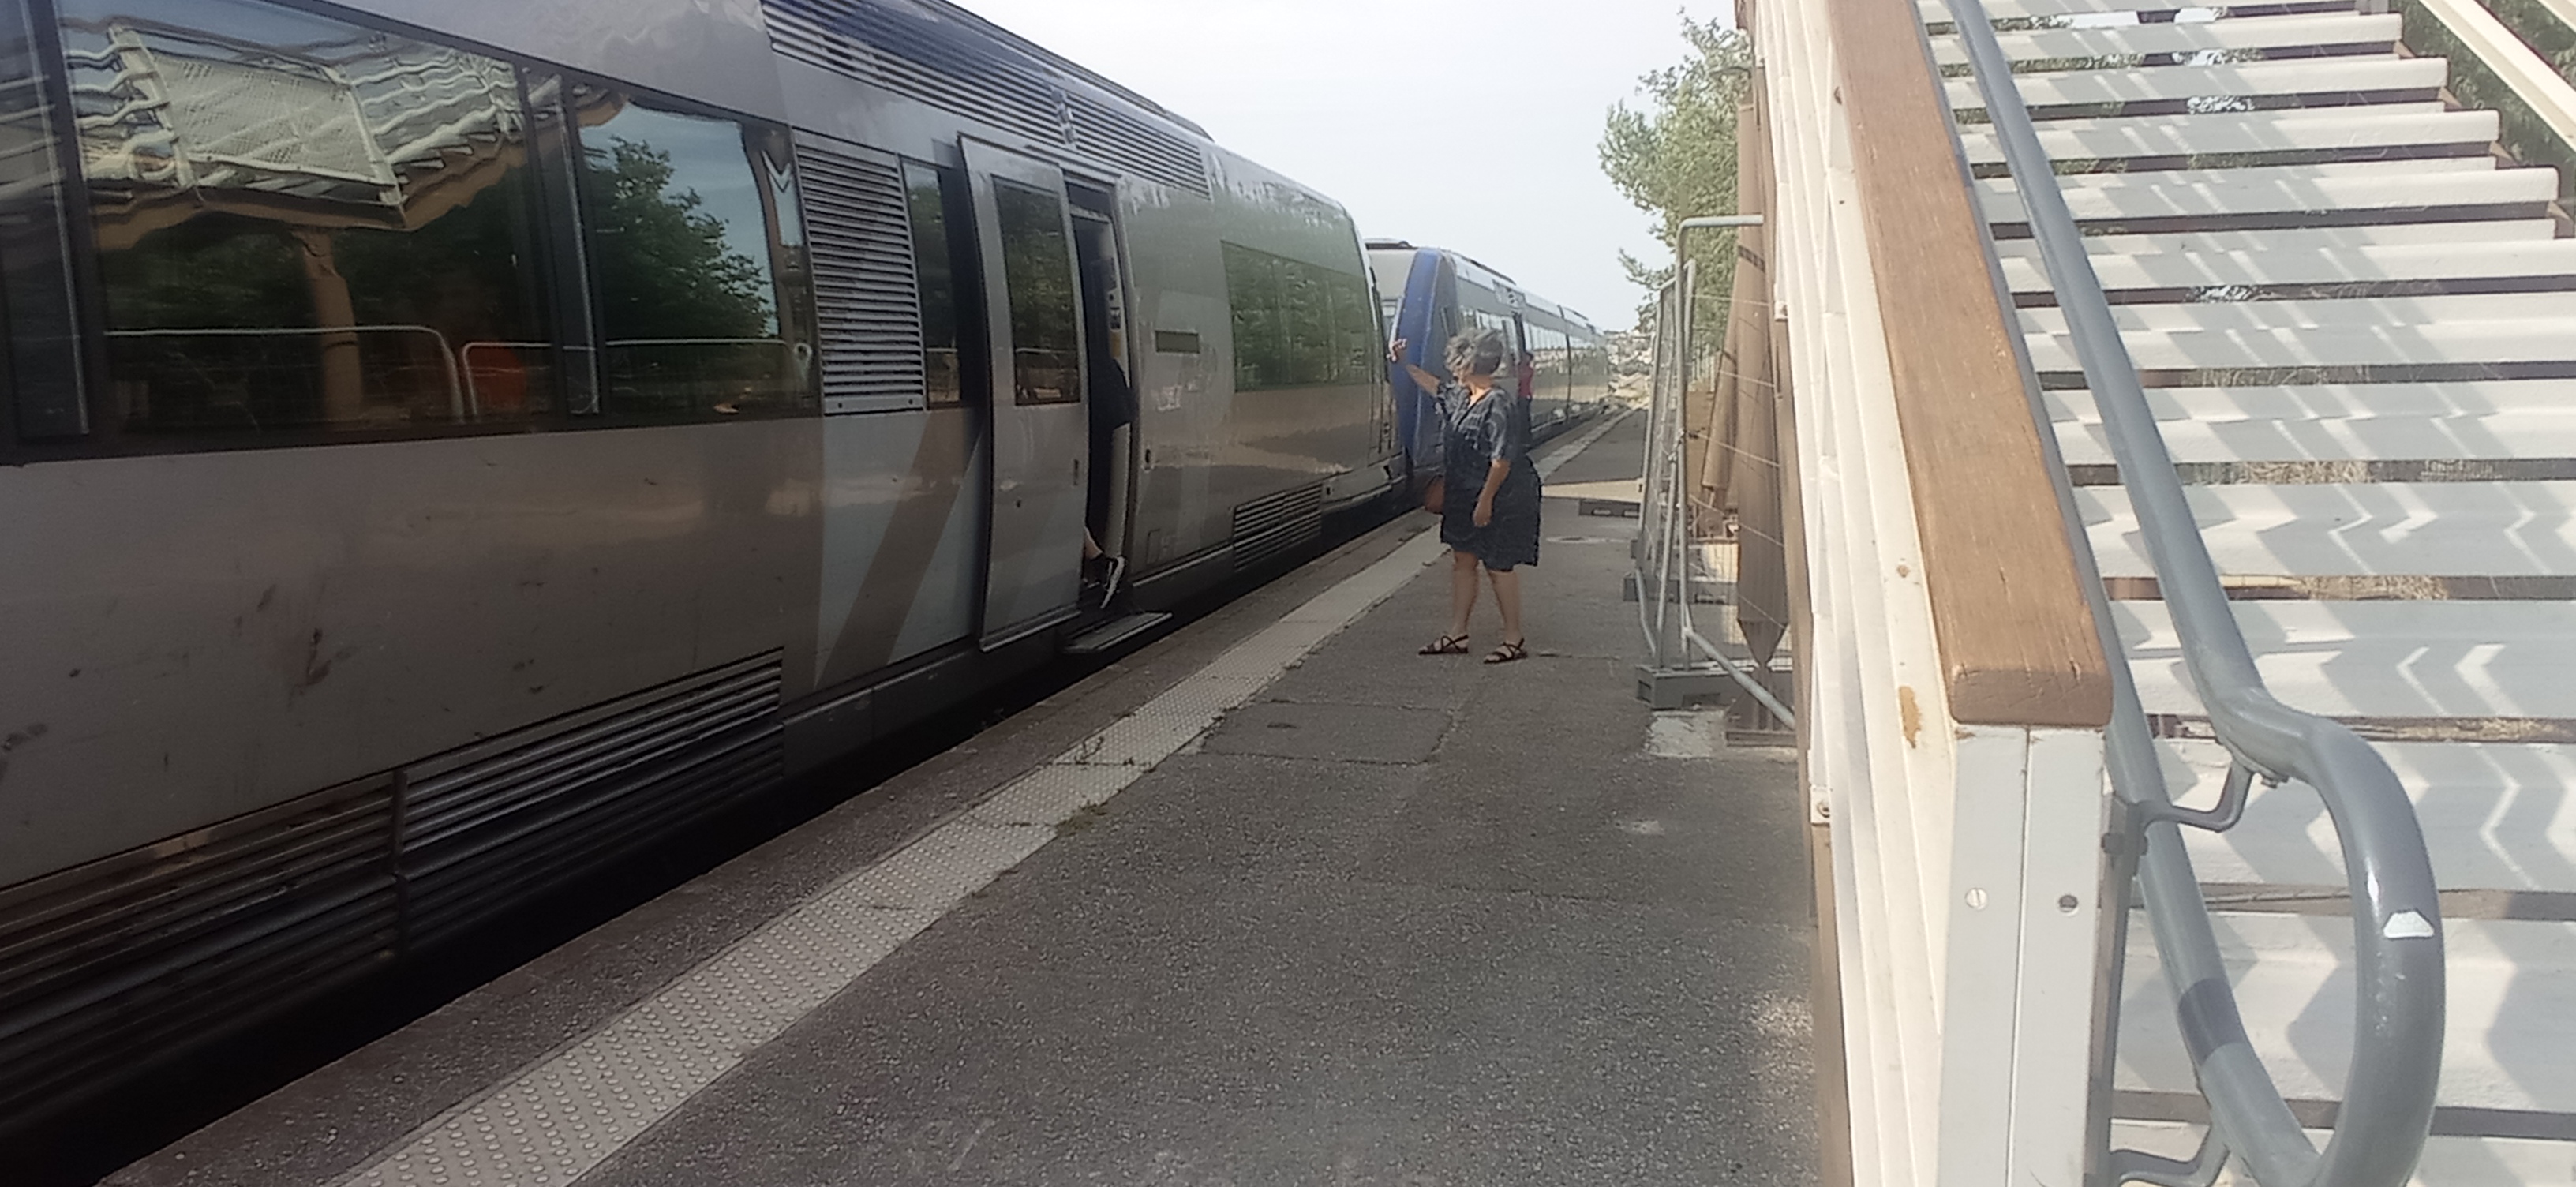 Train de la Côte Bleue vers Marseille au départ de Martigues - © Otmartigues / MyriamF